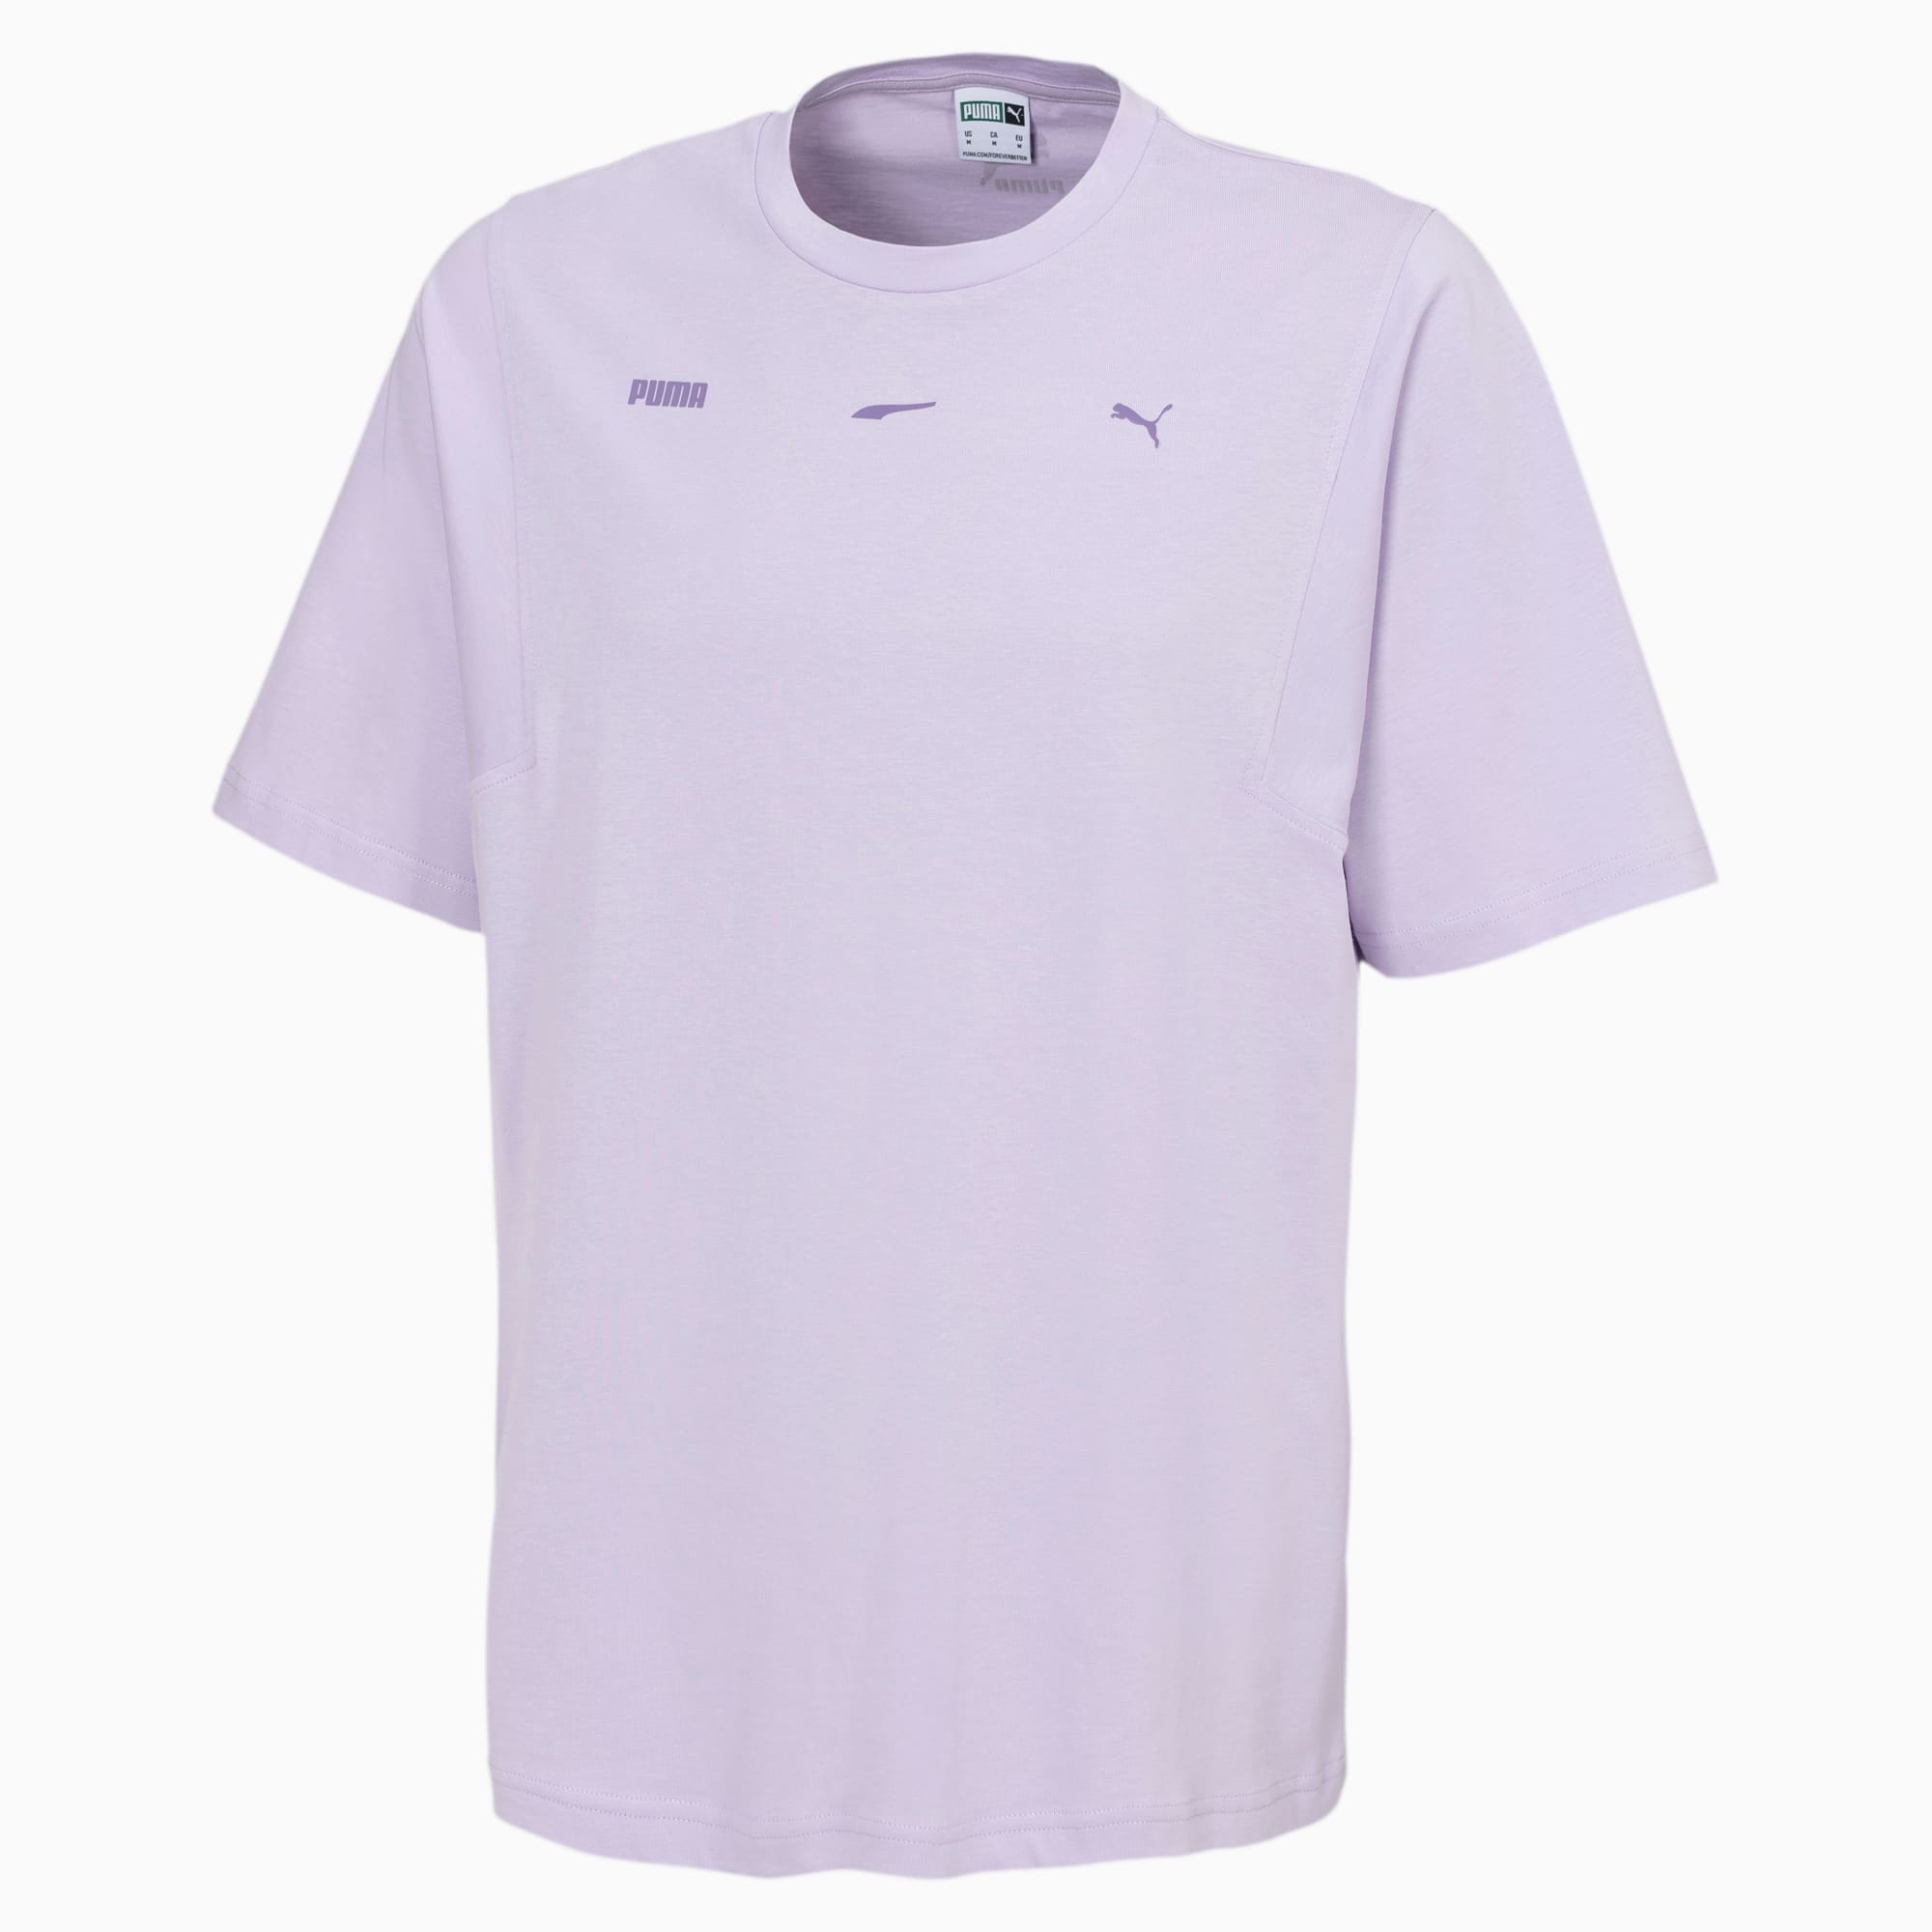 purple puma t shirt